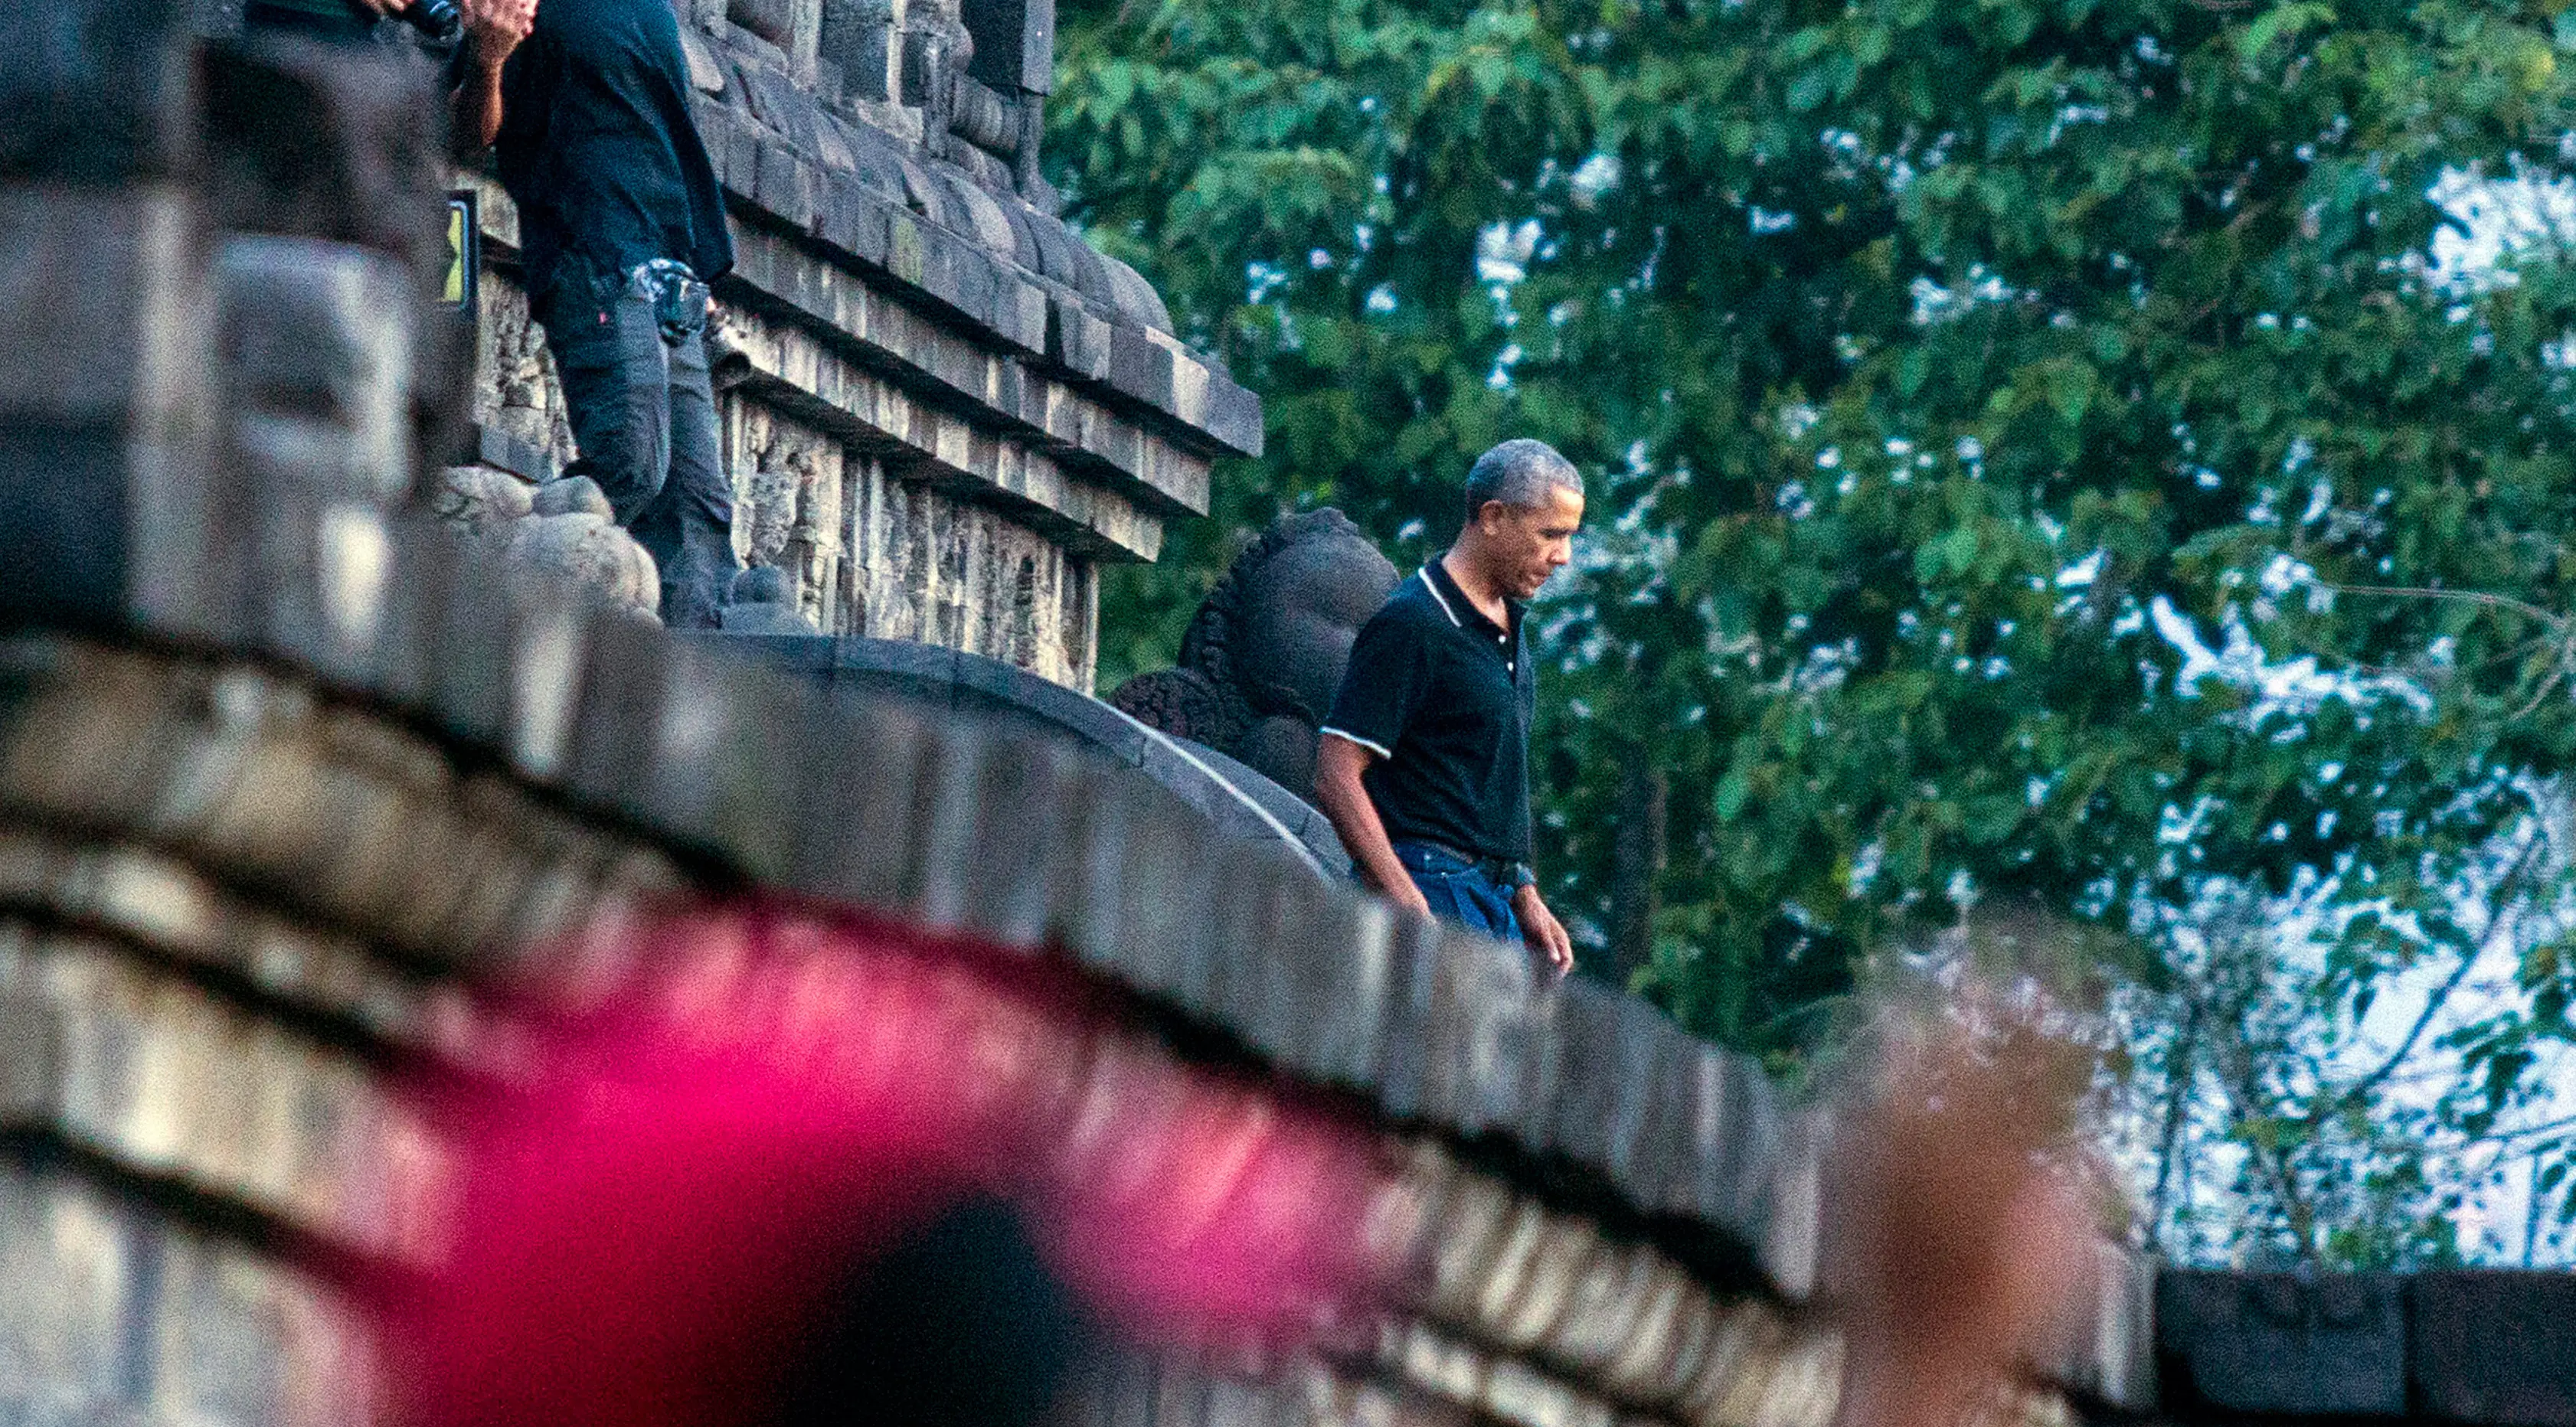 Mantan Presiden Amerika Serikat, Barack Obama berjalan menuruni tangga Candi Borobudur saat berwisata di Magelang, Jawa Tengah, Indonesia, (28/6). Kedatangan Barack Obama dan rombongan disambut meriah wisatawan lainnya. (AP Photo / Slamet Riyadi)